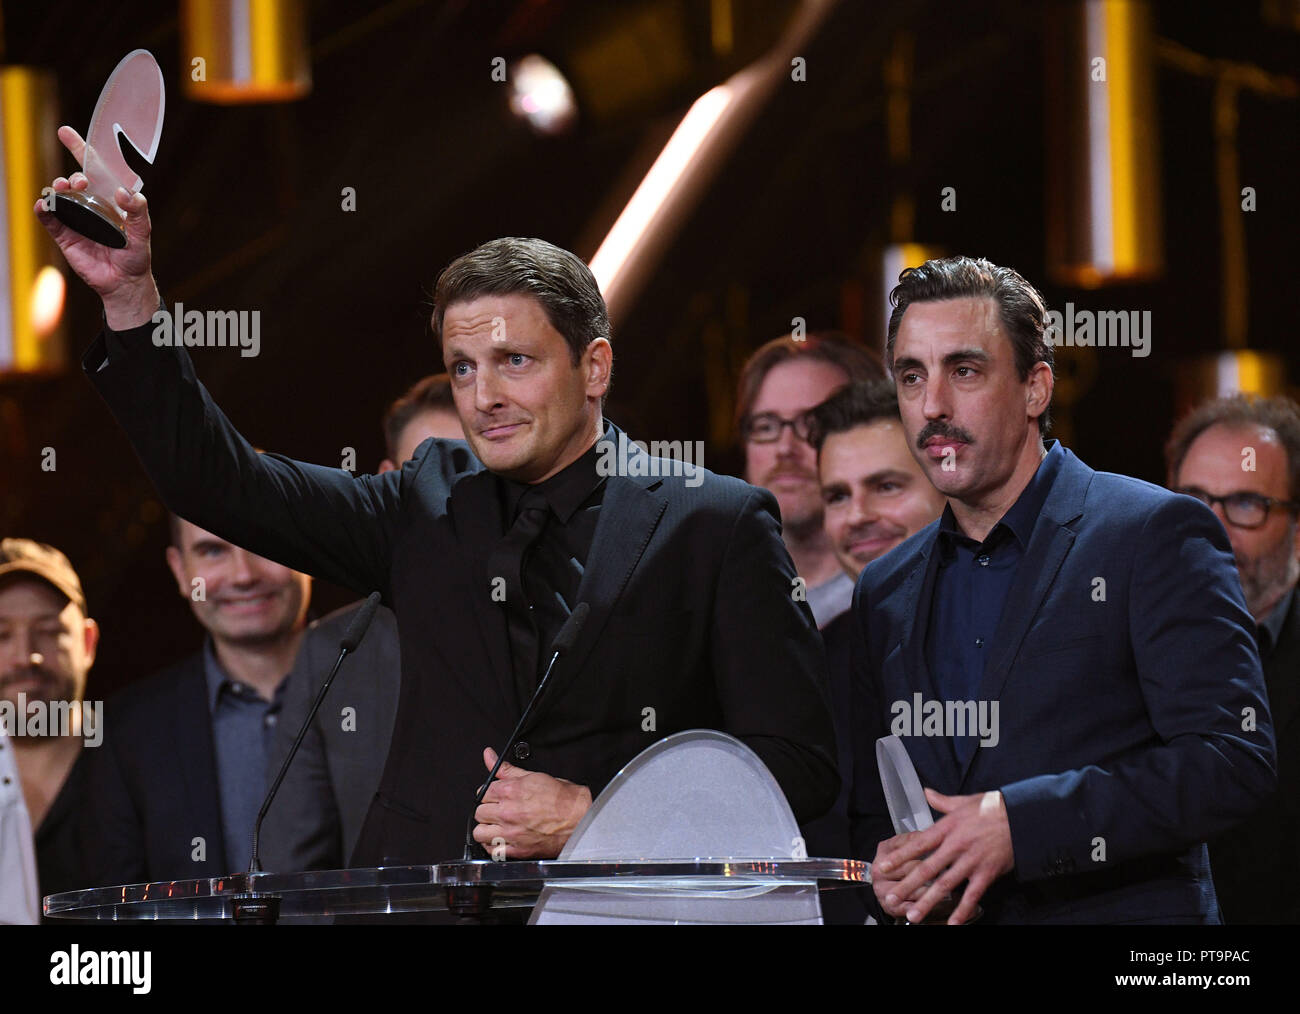 07 ottobre 2018, della Renania settentrionale-Vestfalia, Colonia: gli attori Holger Stockhaus (l) e Alexander Schubert (r) sono felici circa i premi nelle categorie "MIGLIORE PARODIA/Sketch Show' presso il tedesco Comedy Award 2018. Foto: Henning Kaiser/dpa Foto Stock